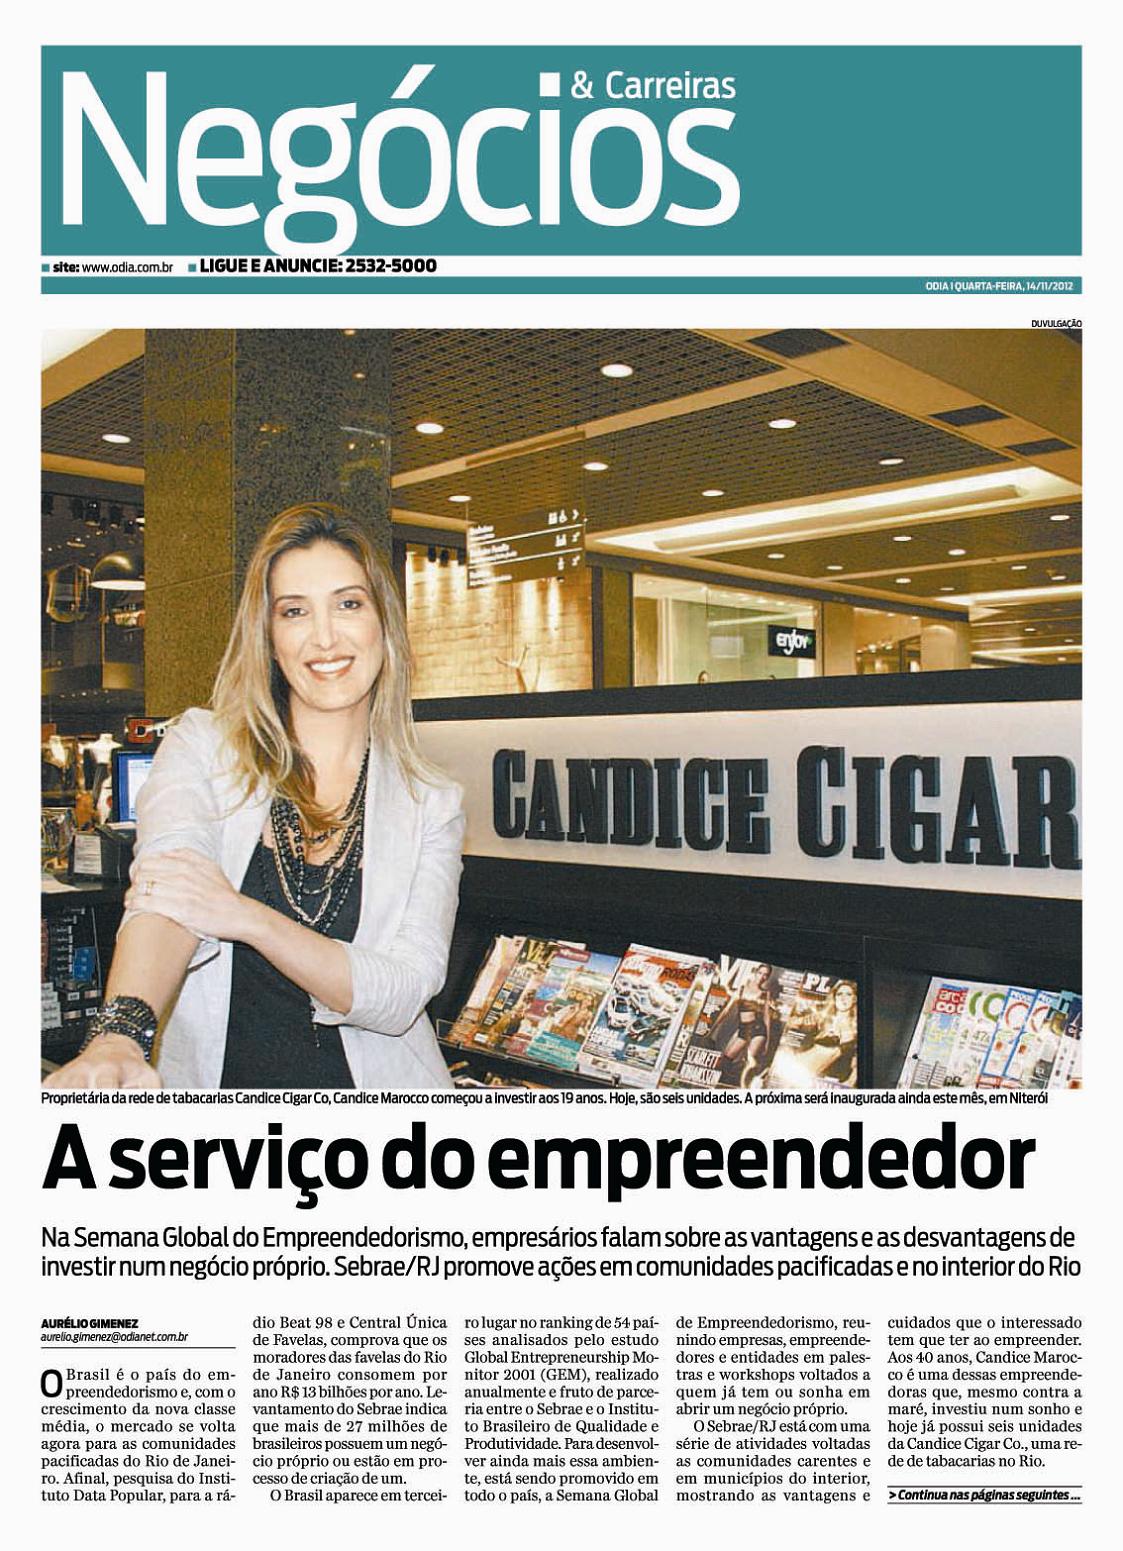 Candice 14 de Novembro de 2012 - Jornal O Dia - Negócios & Carreiras 01.jpg